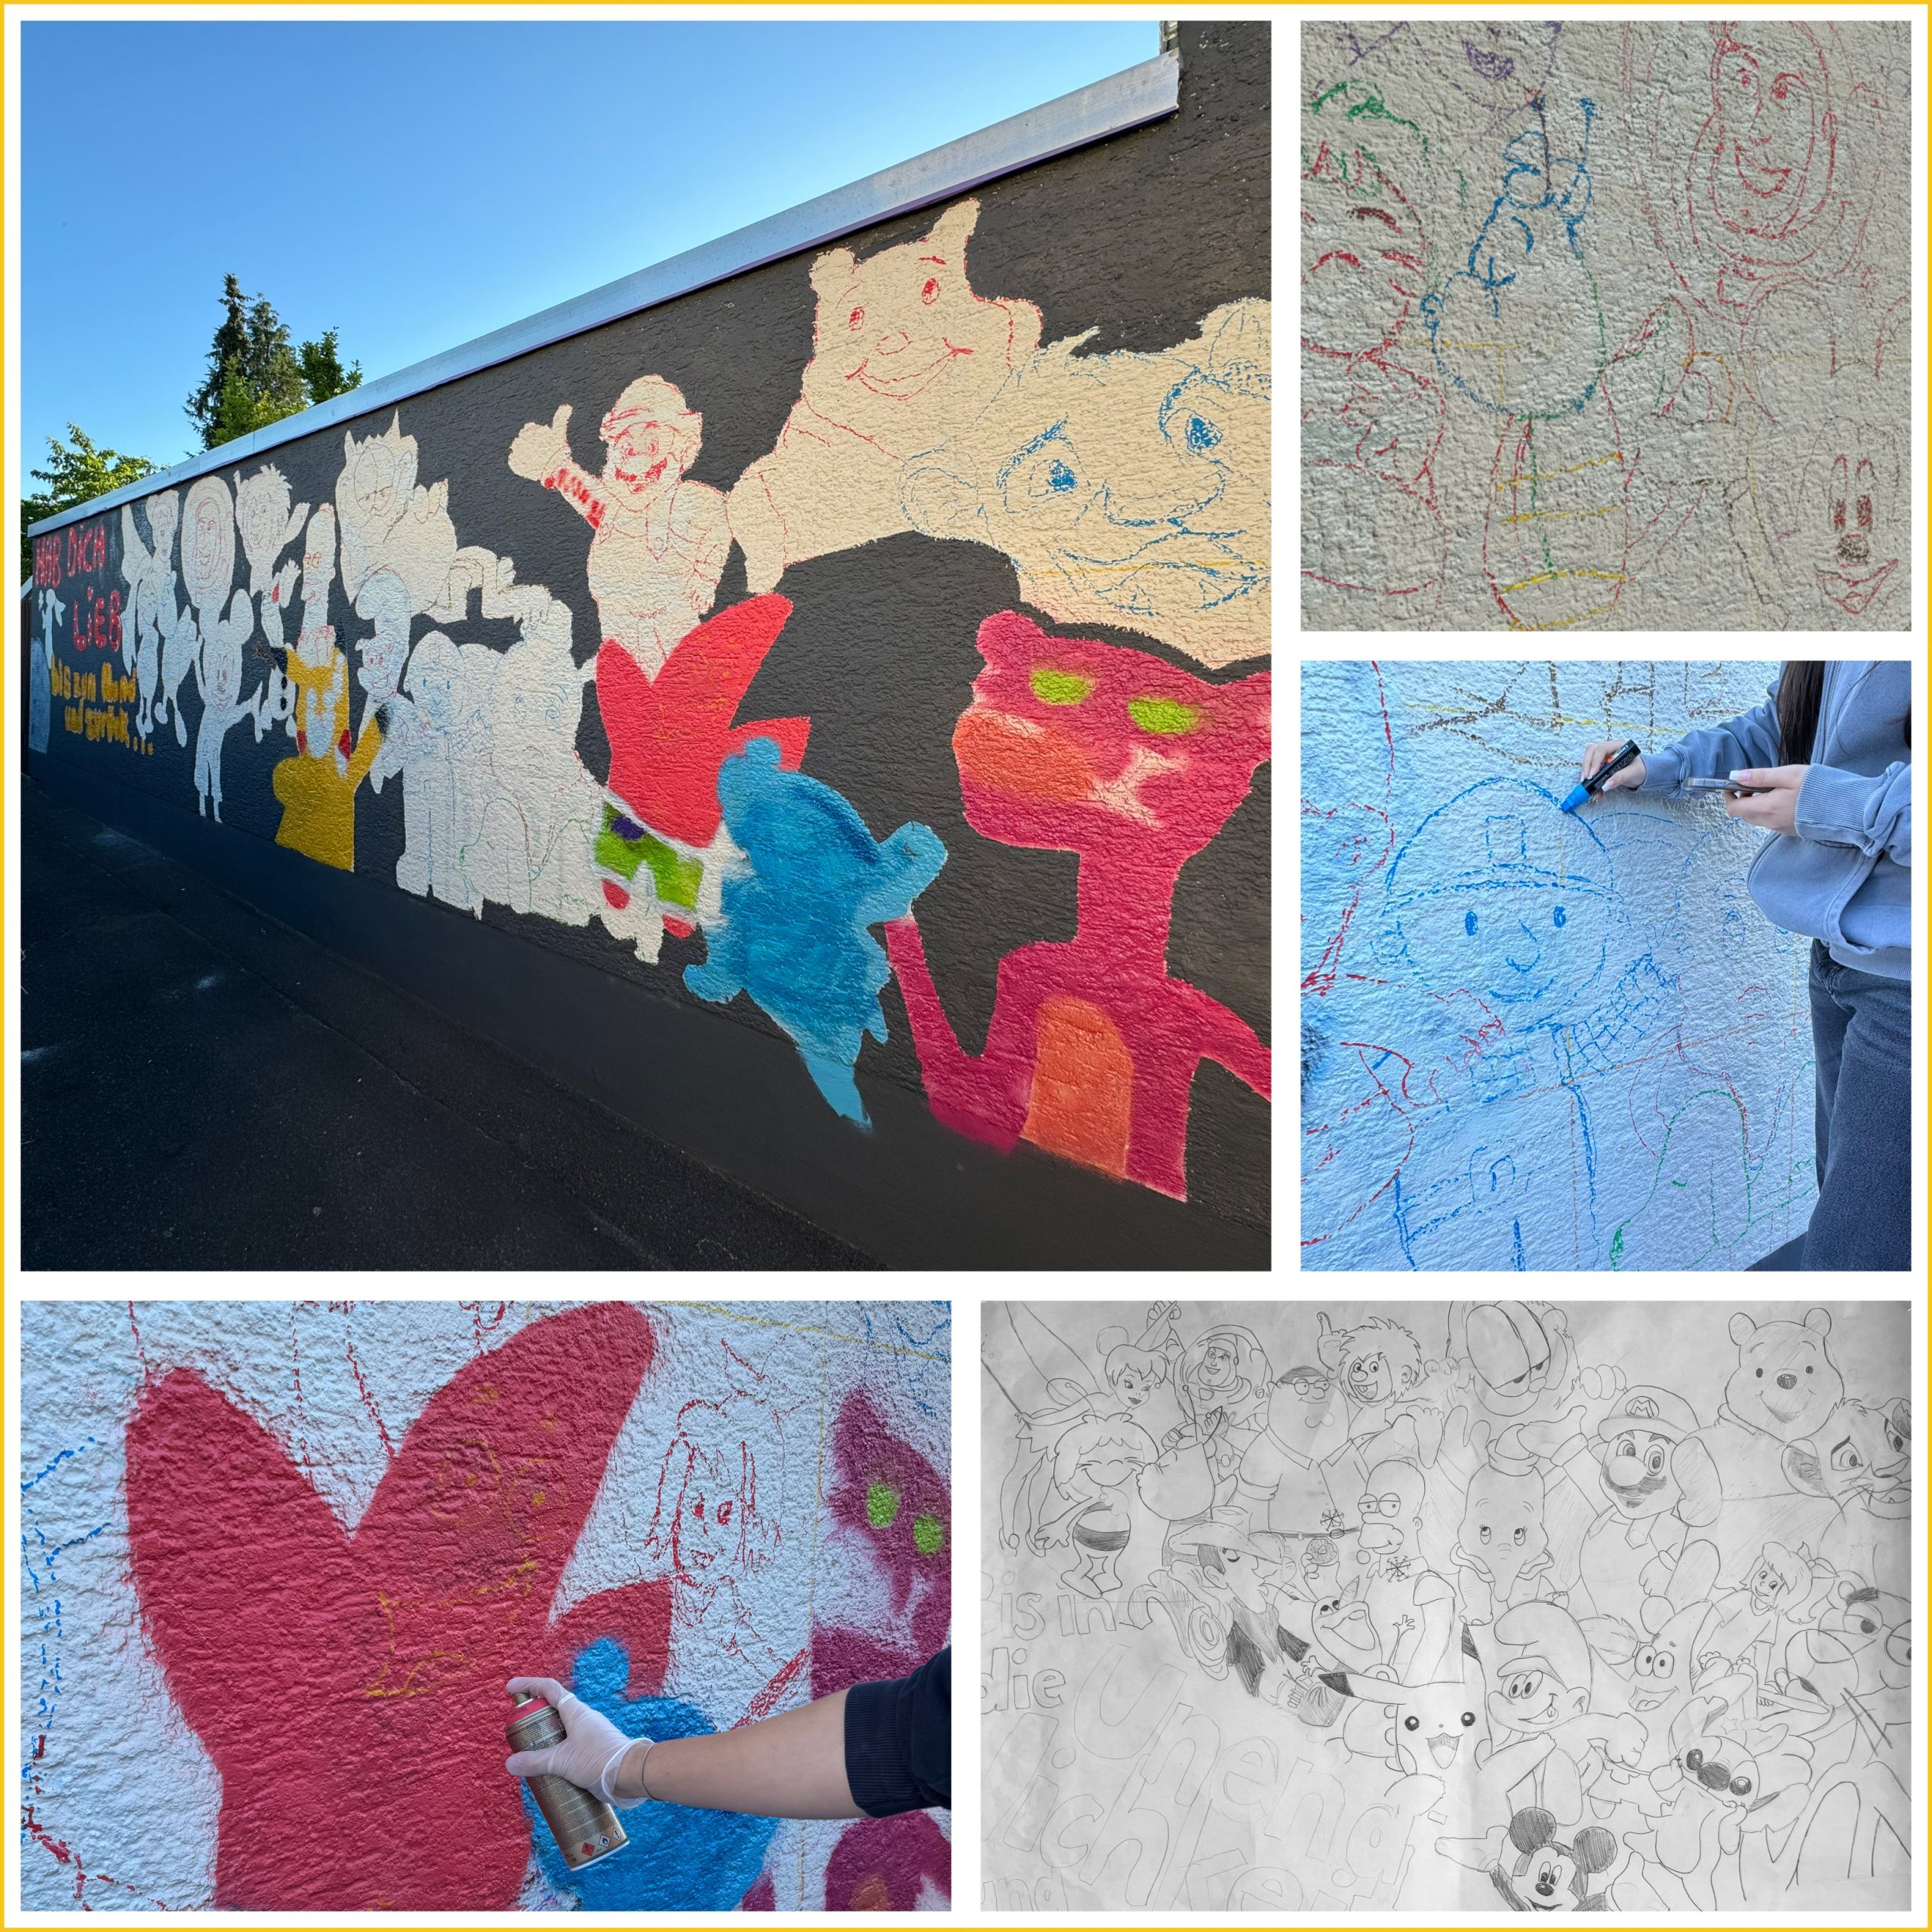 Mehr über den Artikel erfahren Neues Graffiti-Projekt in der Nachbarschaft